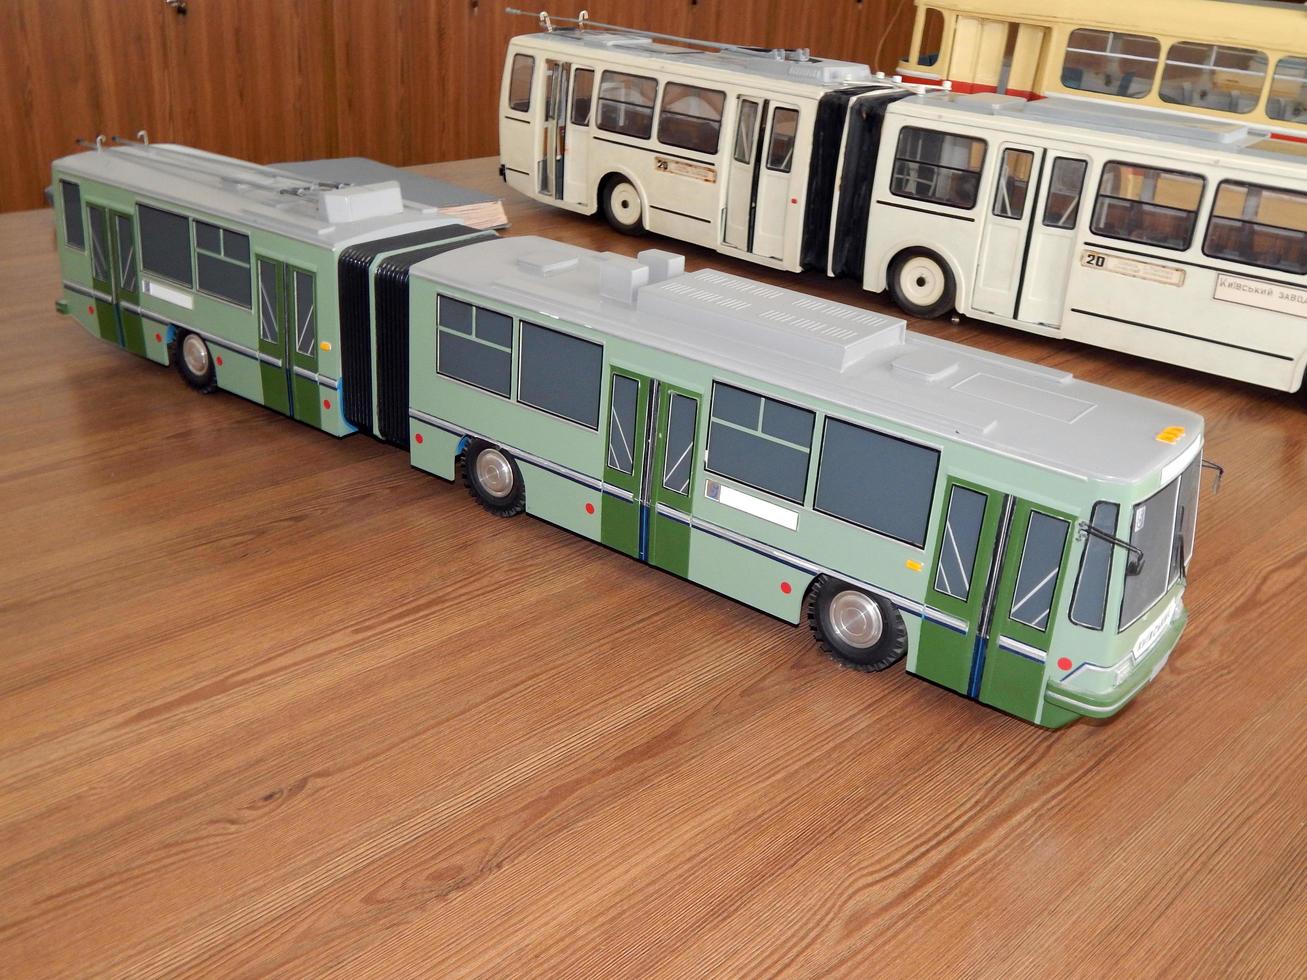 Modelle von Oberleitungsbussen, Modelle von elektrischem Stadtverkehr foto